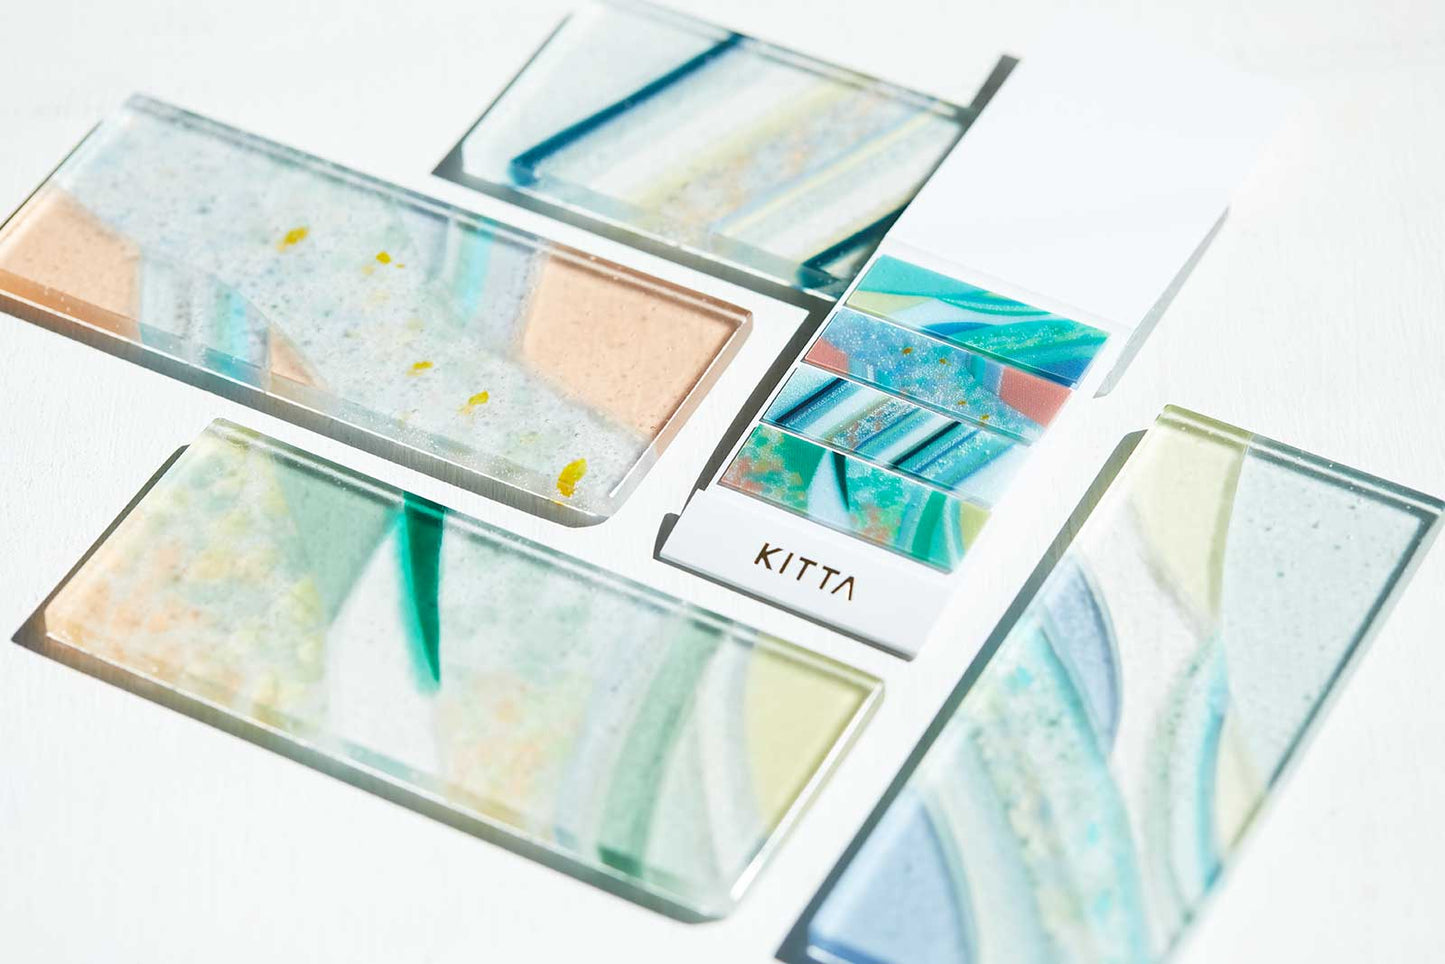 KITTA Portable Clear Washi Tape, Glass